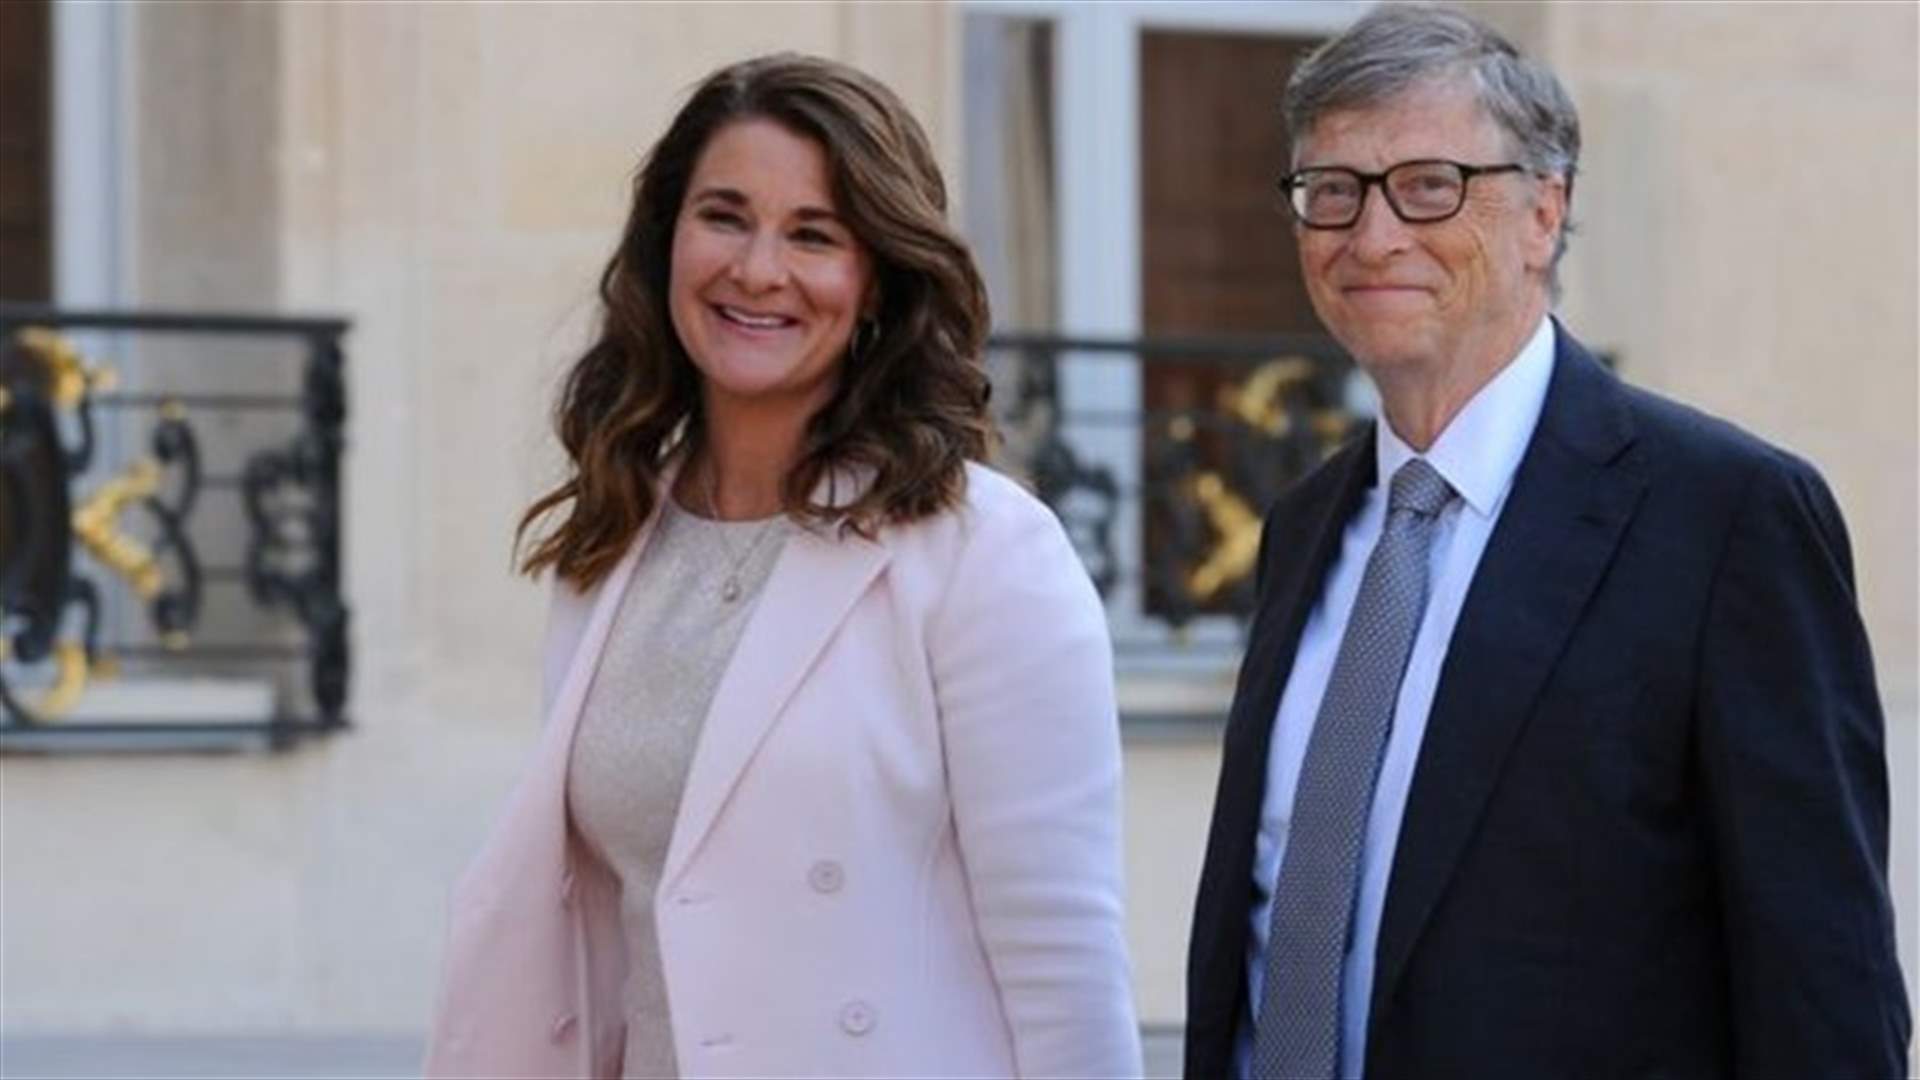 بعد طلاق بيل وميلندا غيتس... 7 حقائق بالأرقام تُظهر حجم ثروة مؤسس ميكروسوفت!